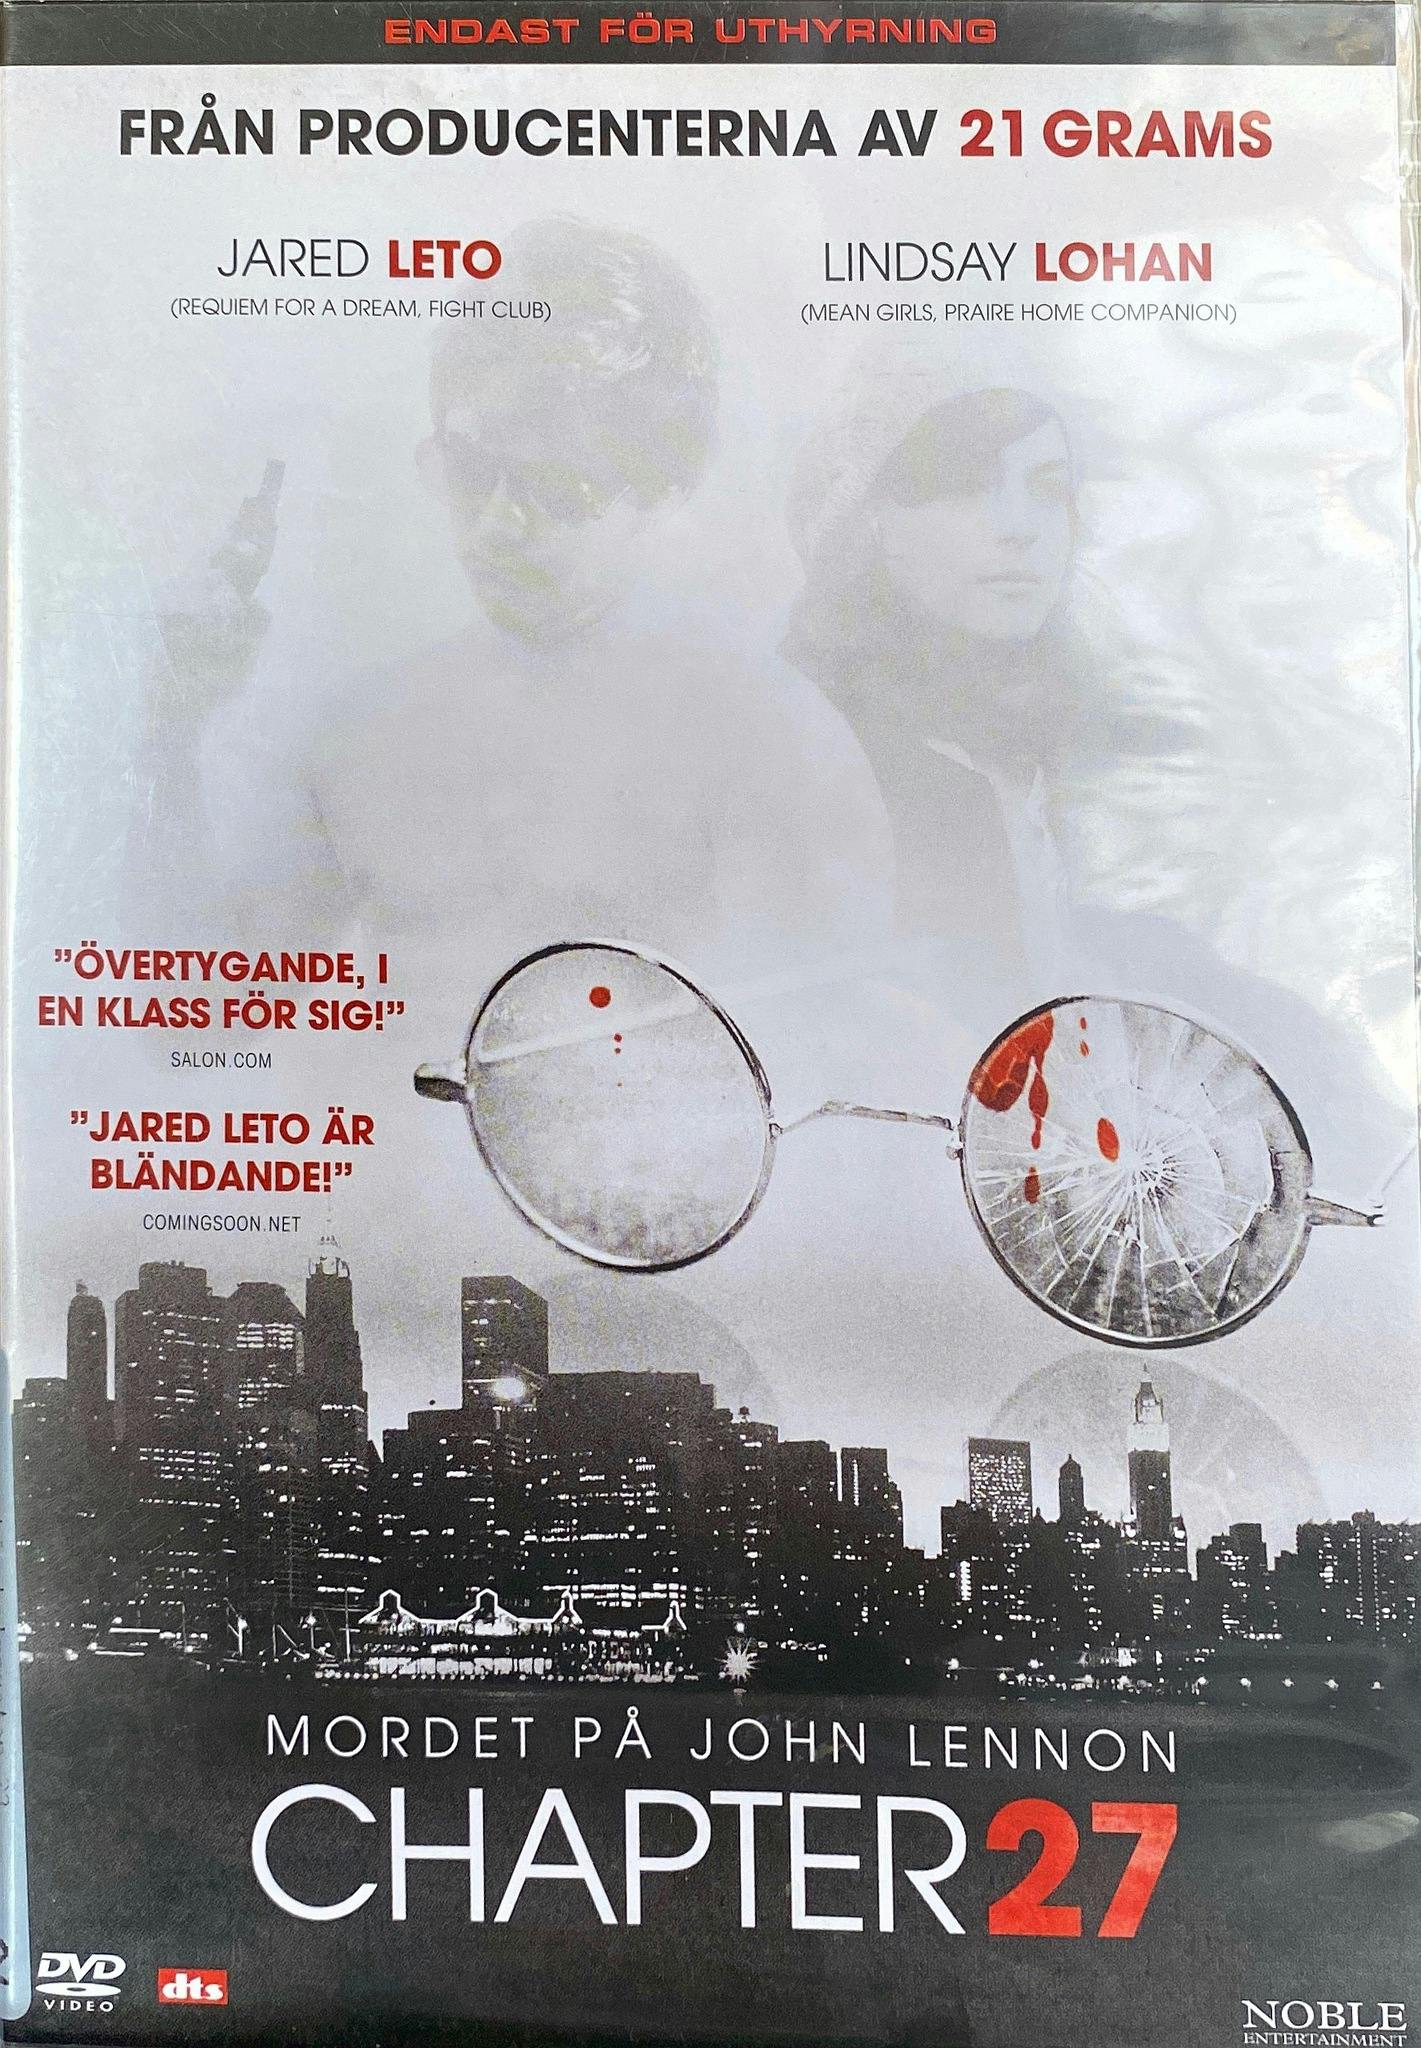 Chapter 27 - Mordet på John Lennon (DVD, ExRental)